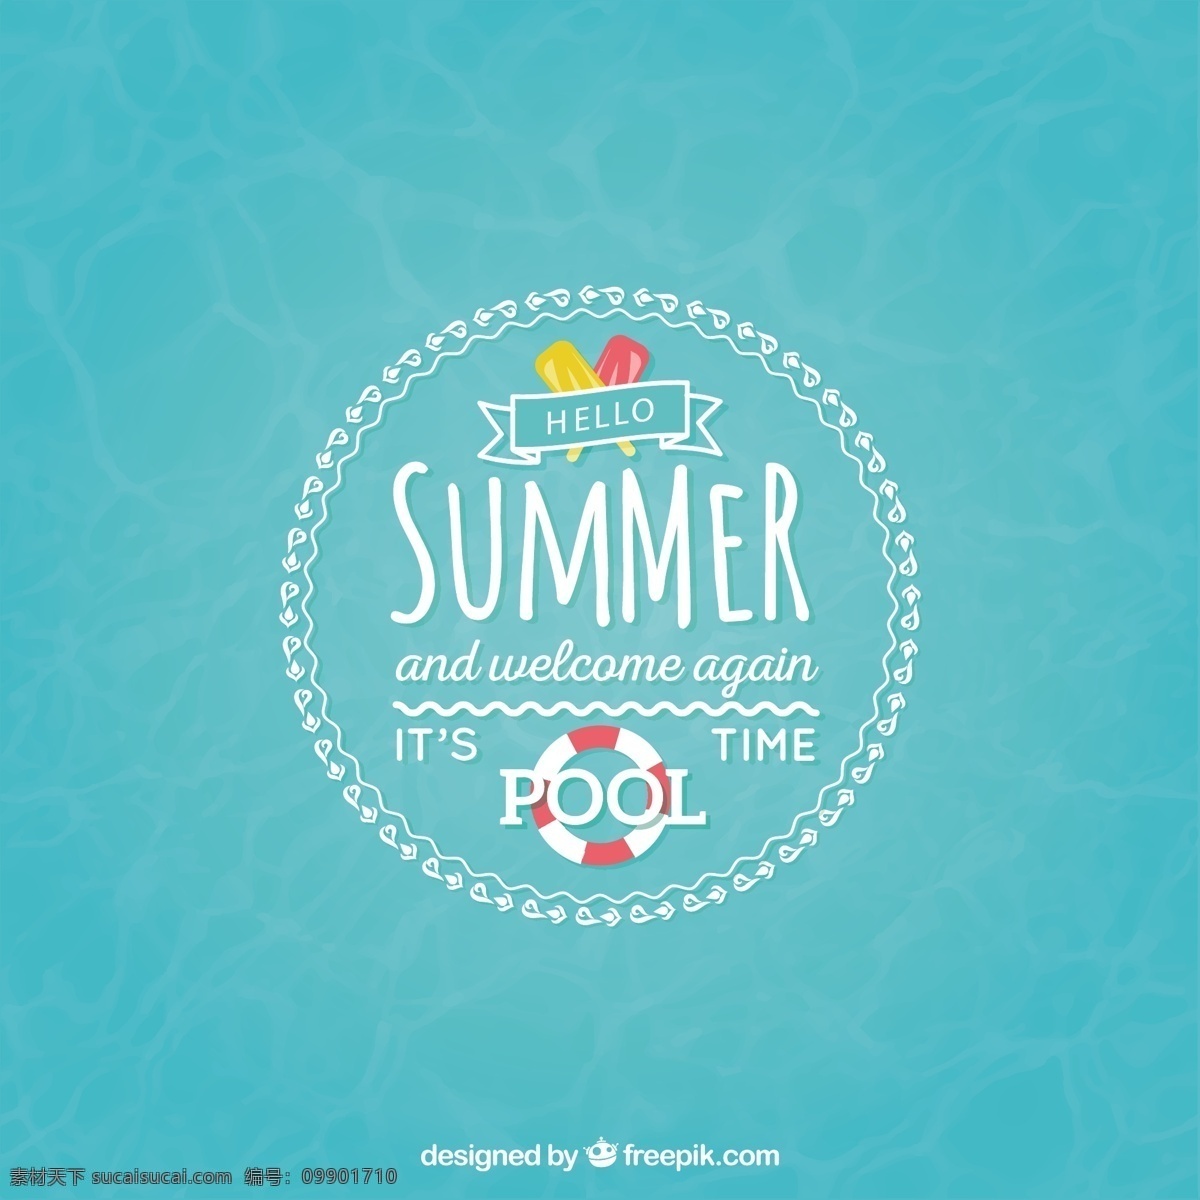 池的时代背景 背景 夏天 游泳 游泳池 假期 夏季 青色 天蓝色